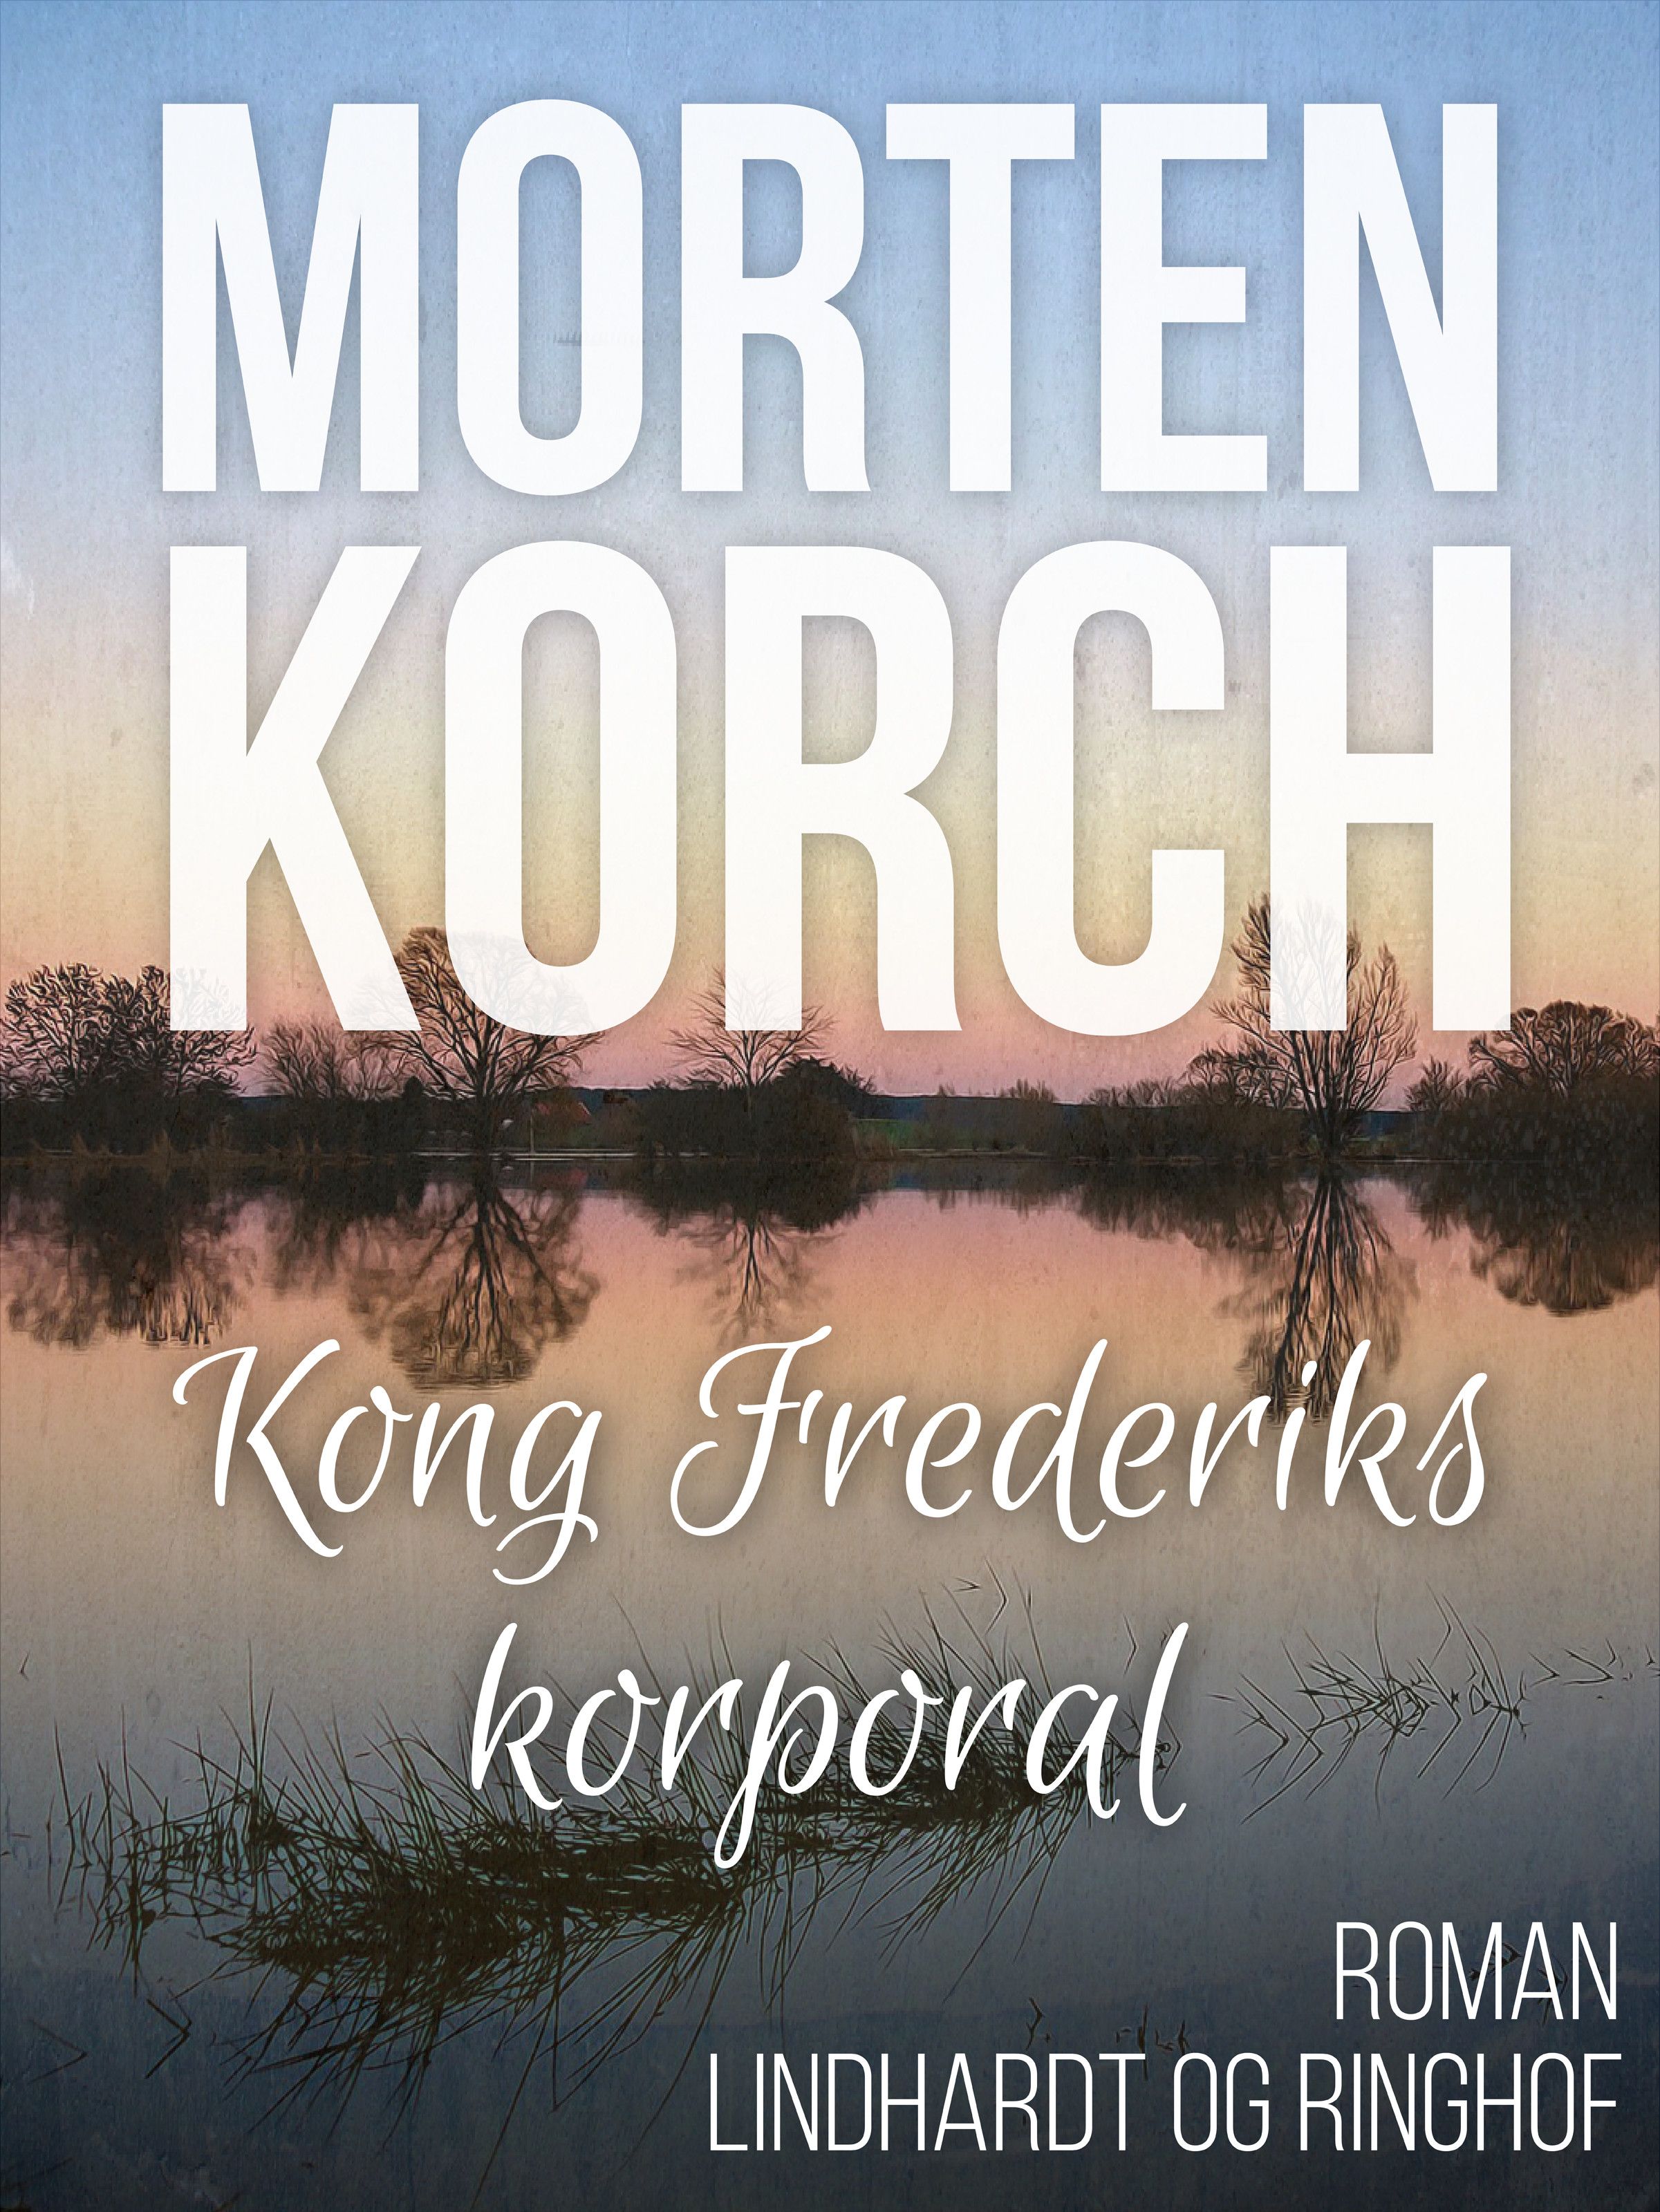 Kong Frederiks korporal, lydbog af Morten Korch